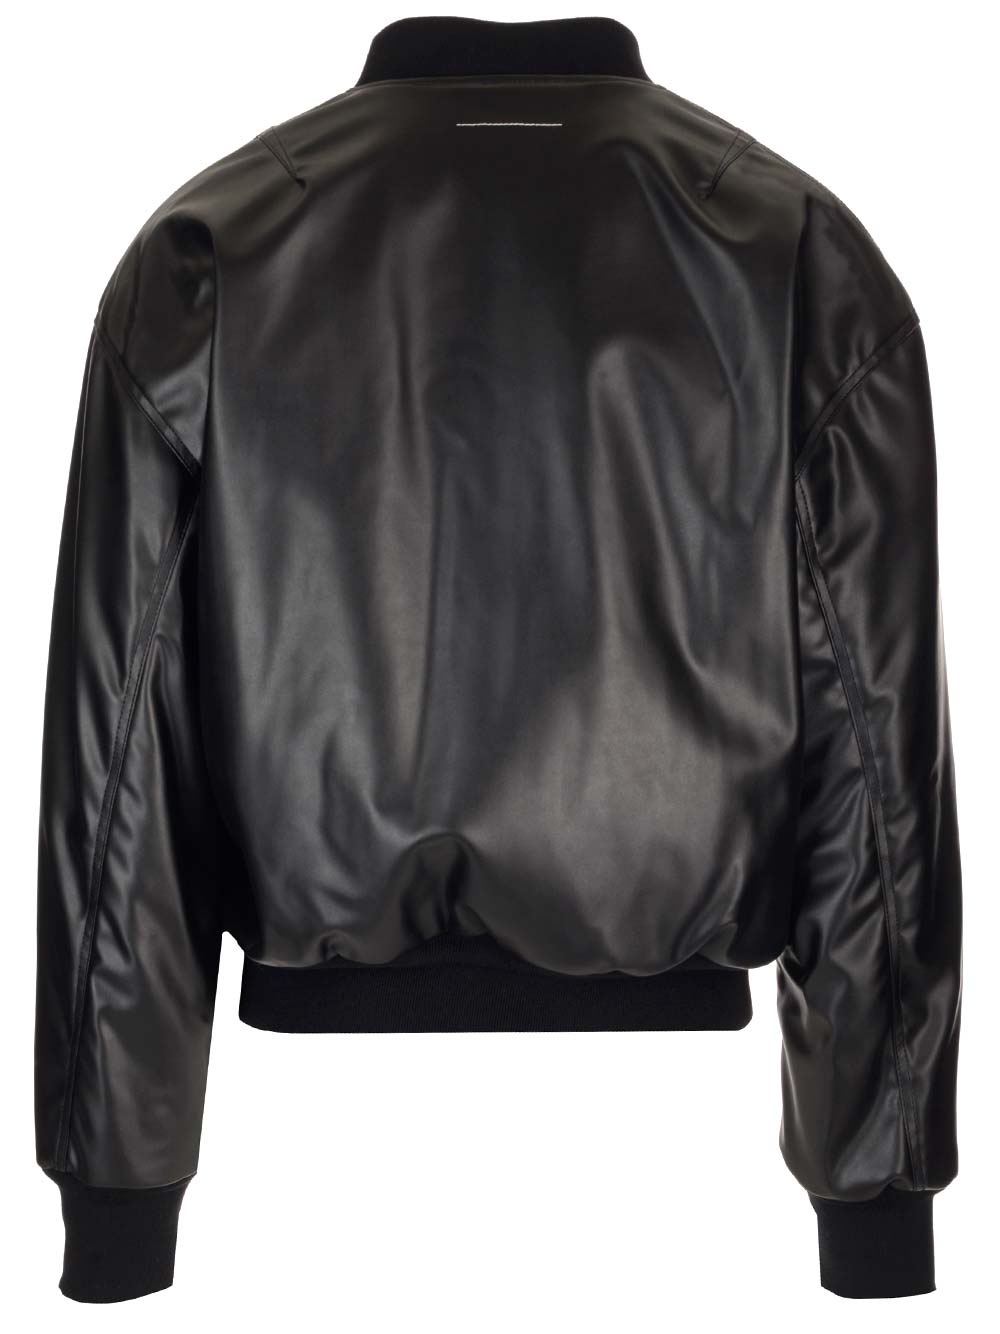 MM6 MAISON MARGIELA Teddy jacket in black imitation leather